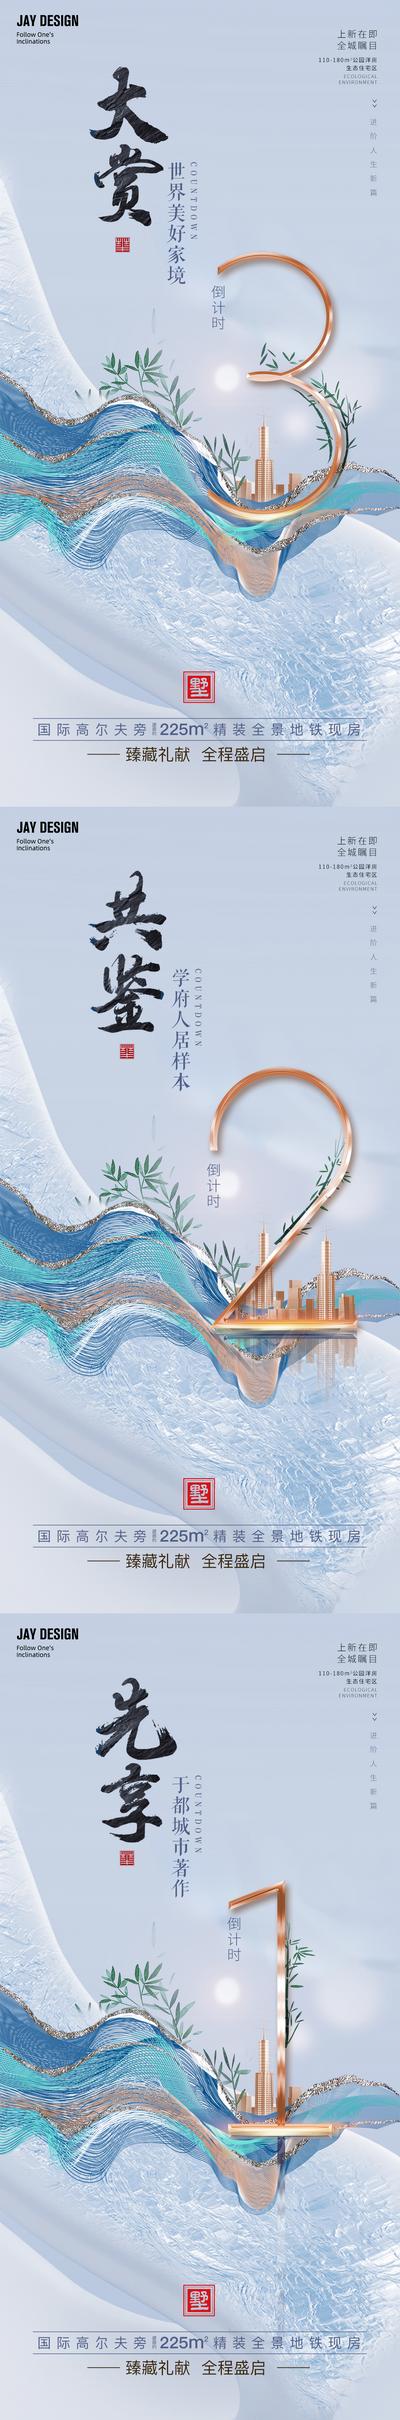 南门网 广告 海报 地产 倒计时 活动 中式 中国风 质感 系列 价值点 系列